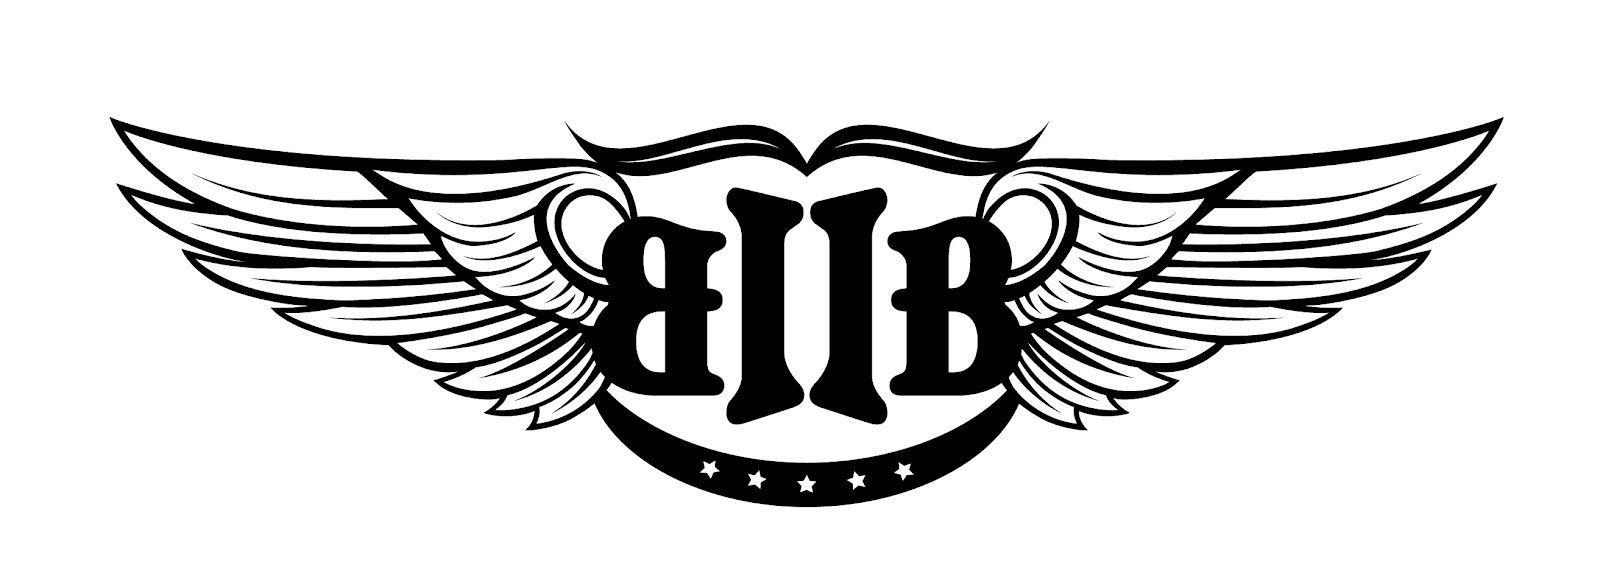 Btob Logo - btob logo | BTOB | Btob, Logos és Kpop logos